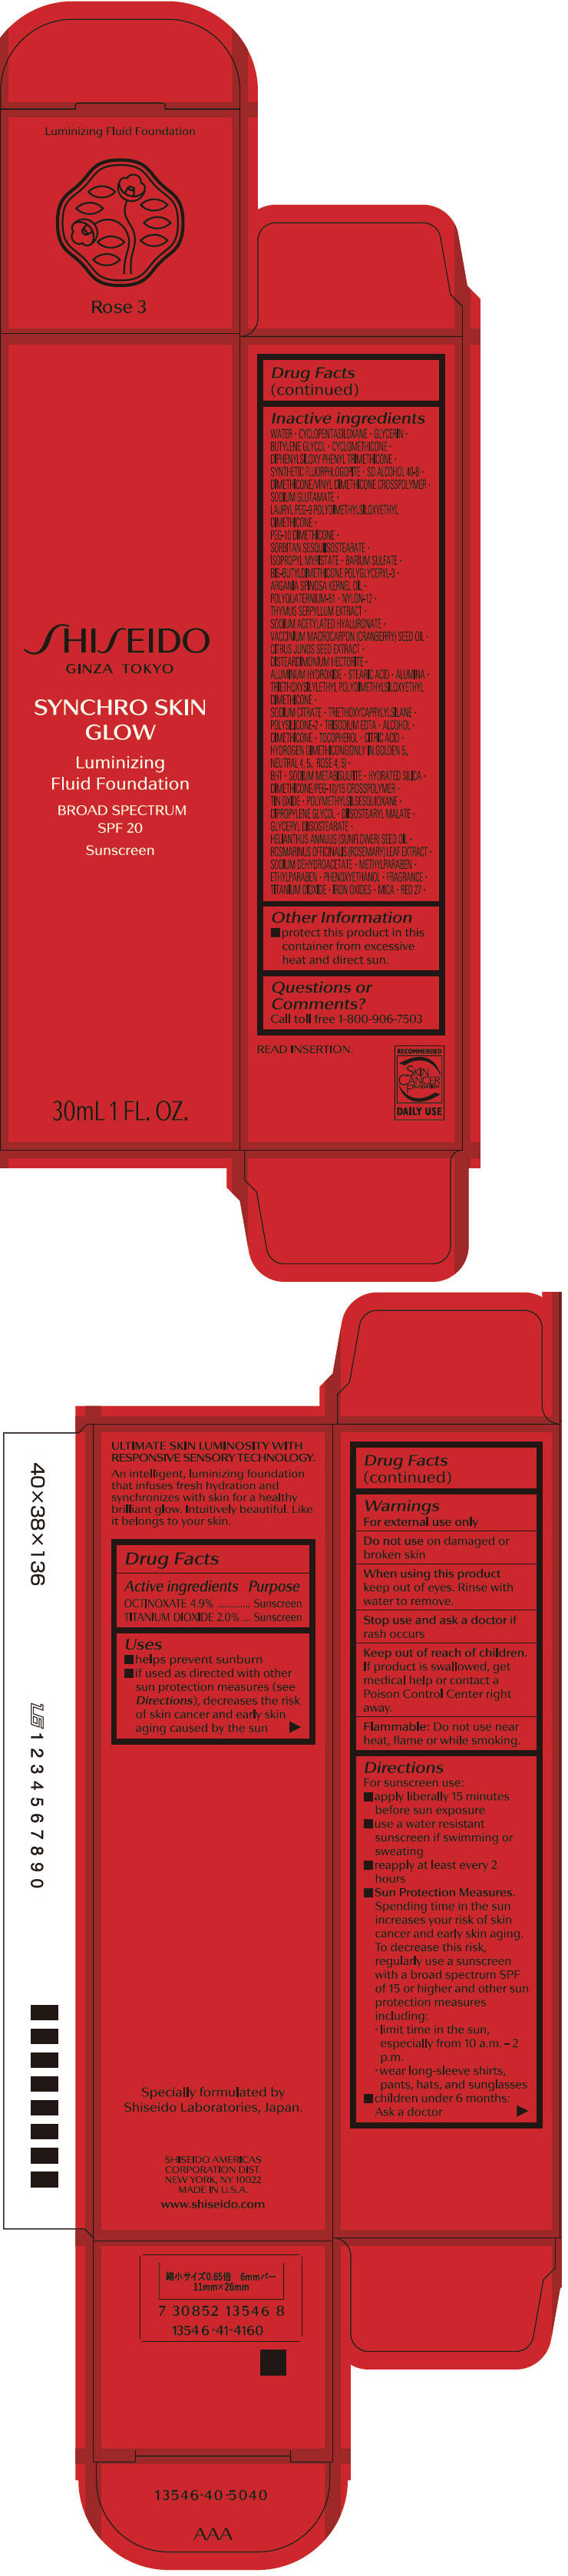 PRINCIPAL DISPLAY PANEL - 30 mL Bottle Carton - Rose 3